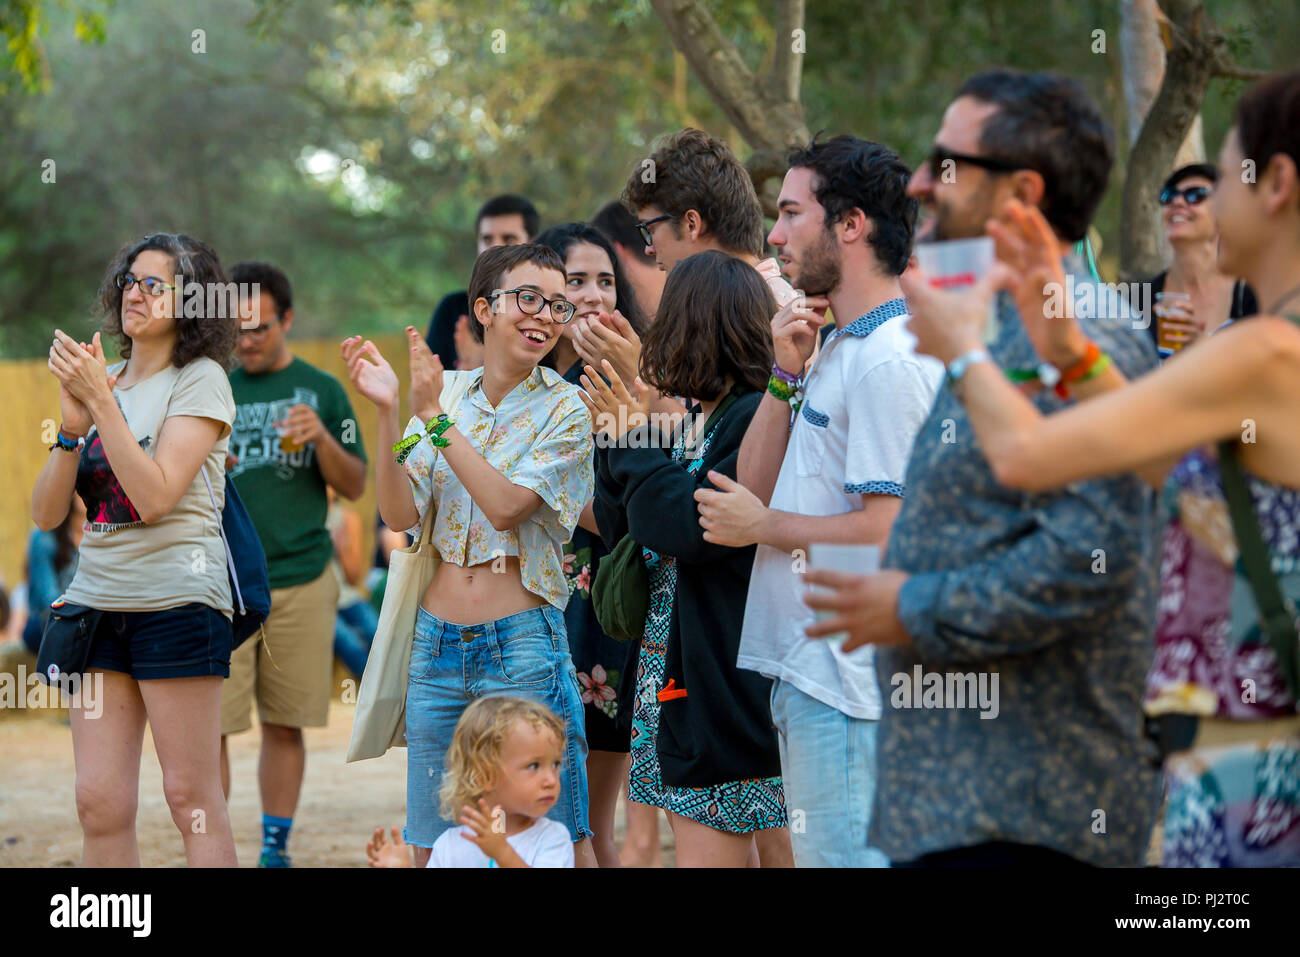 BARCELONA - JUL 3: People at Vida Festival on July 3, 2016 in Barcelona, Spain. Stock Photo